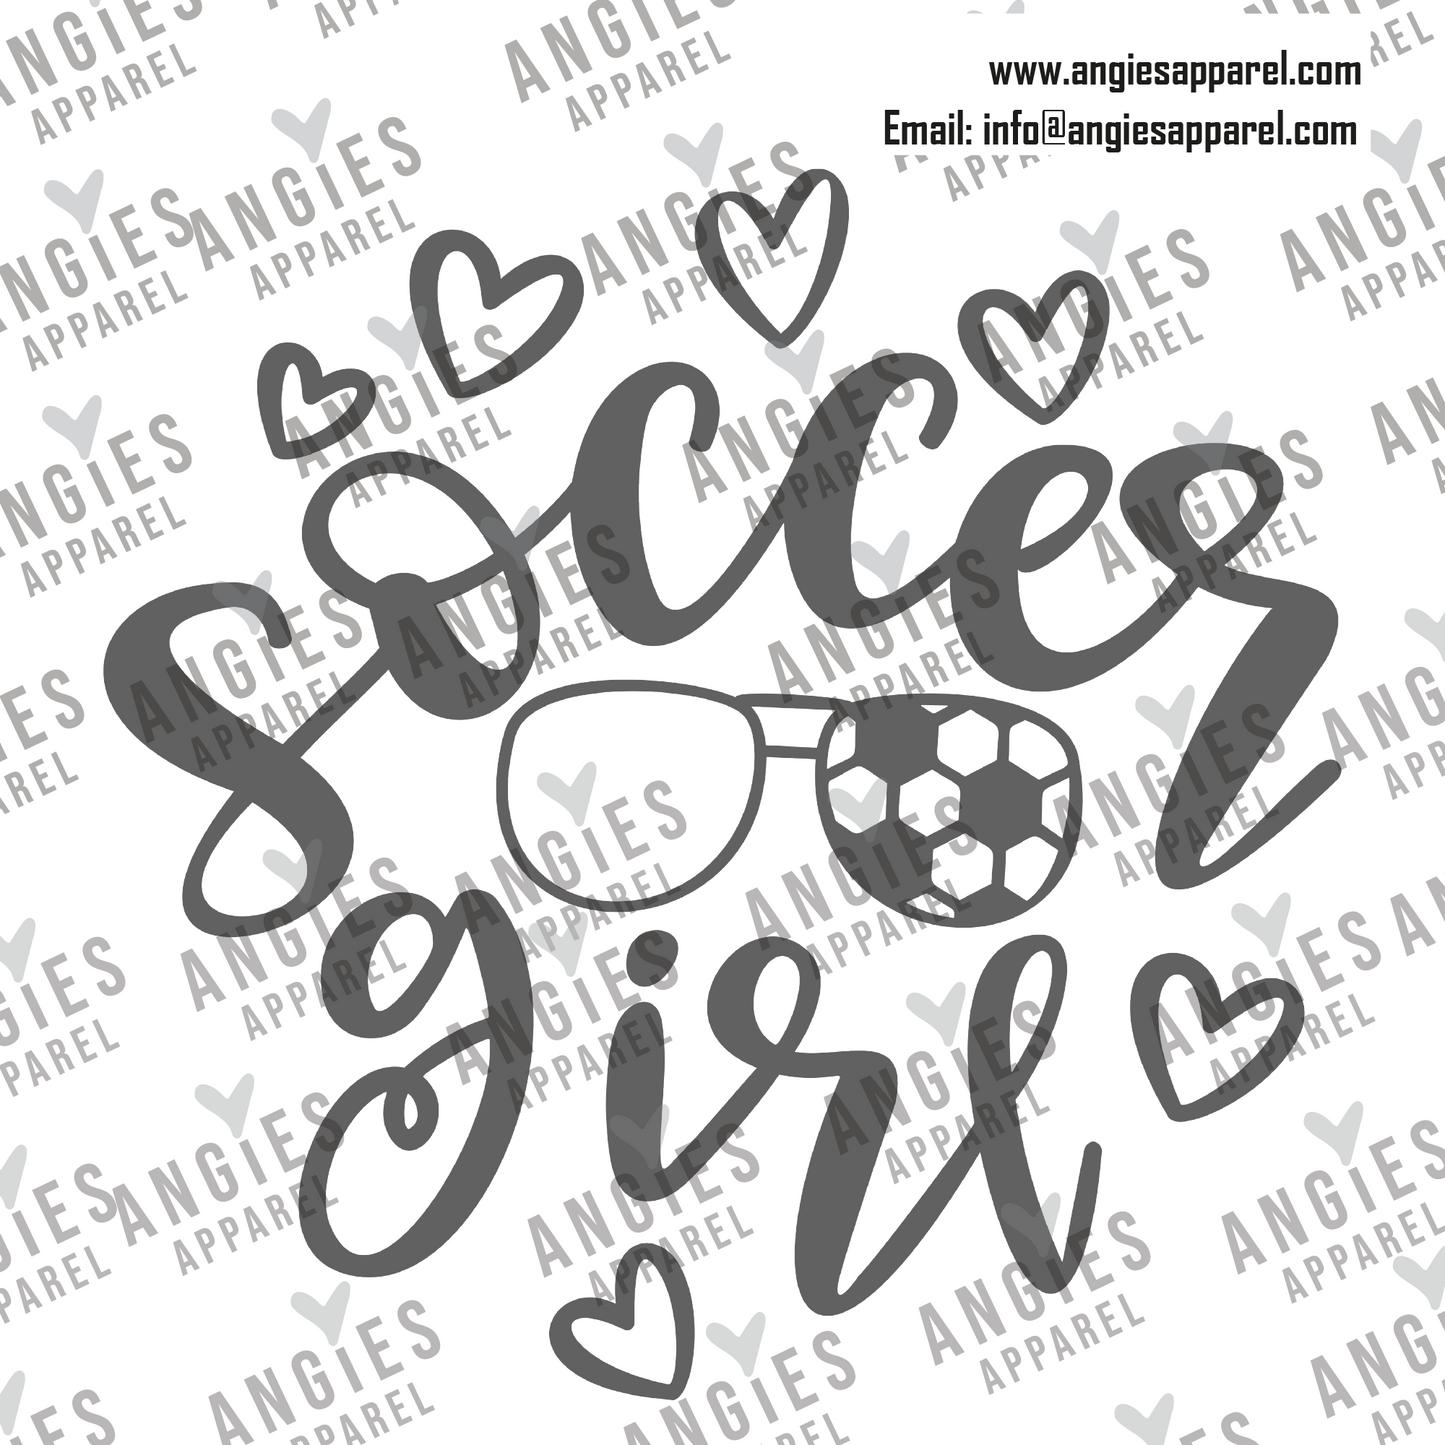 16. Soccer - Soccer Girl - Ready to Press